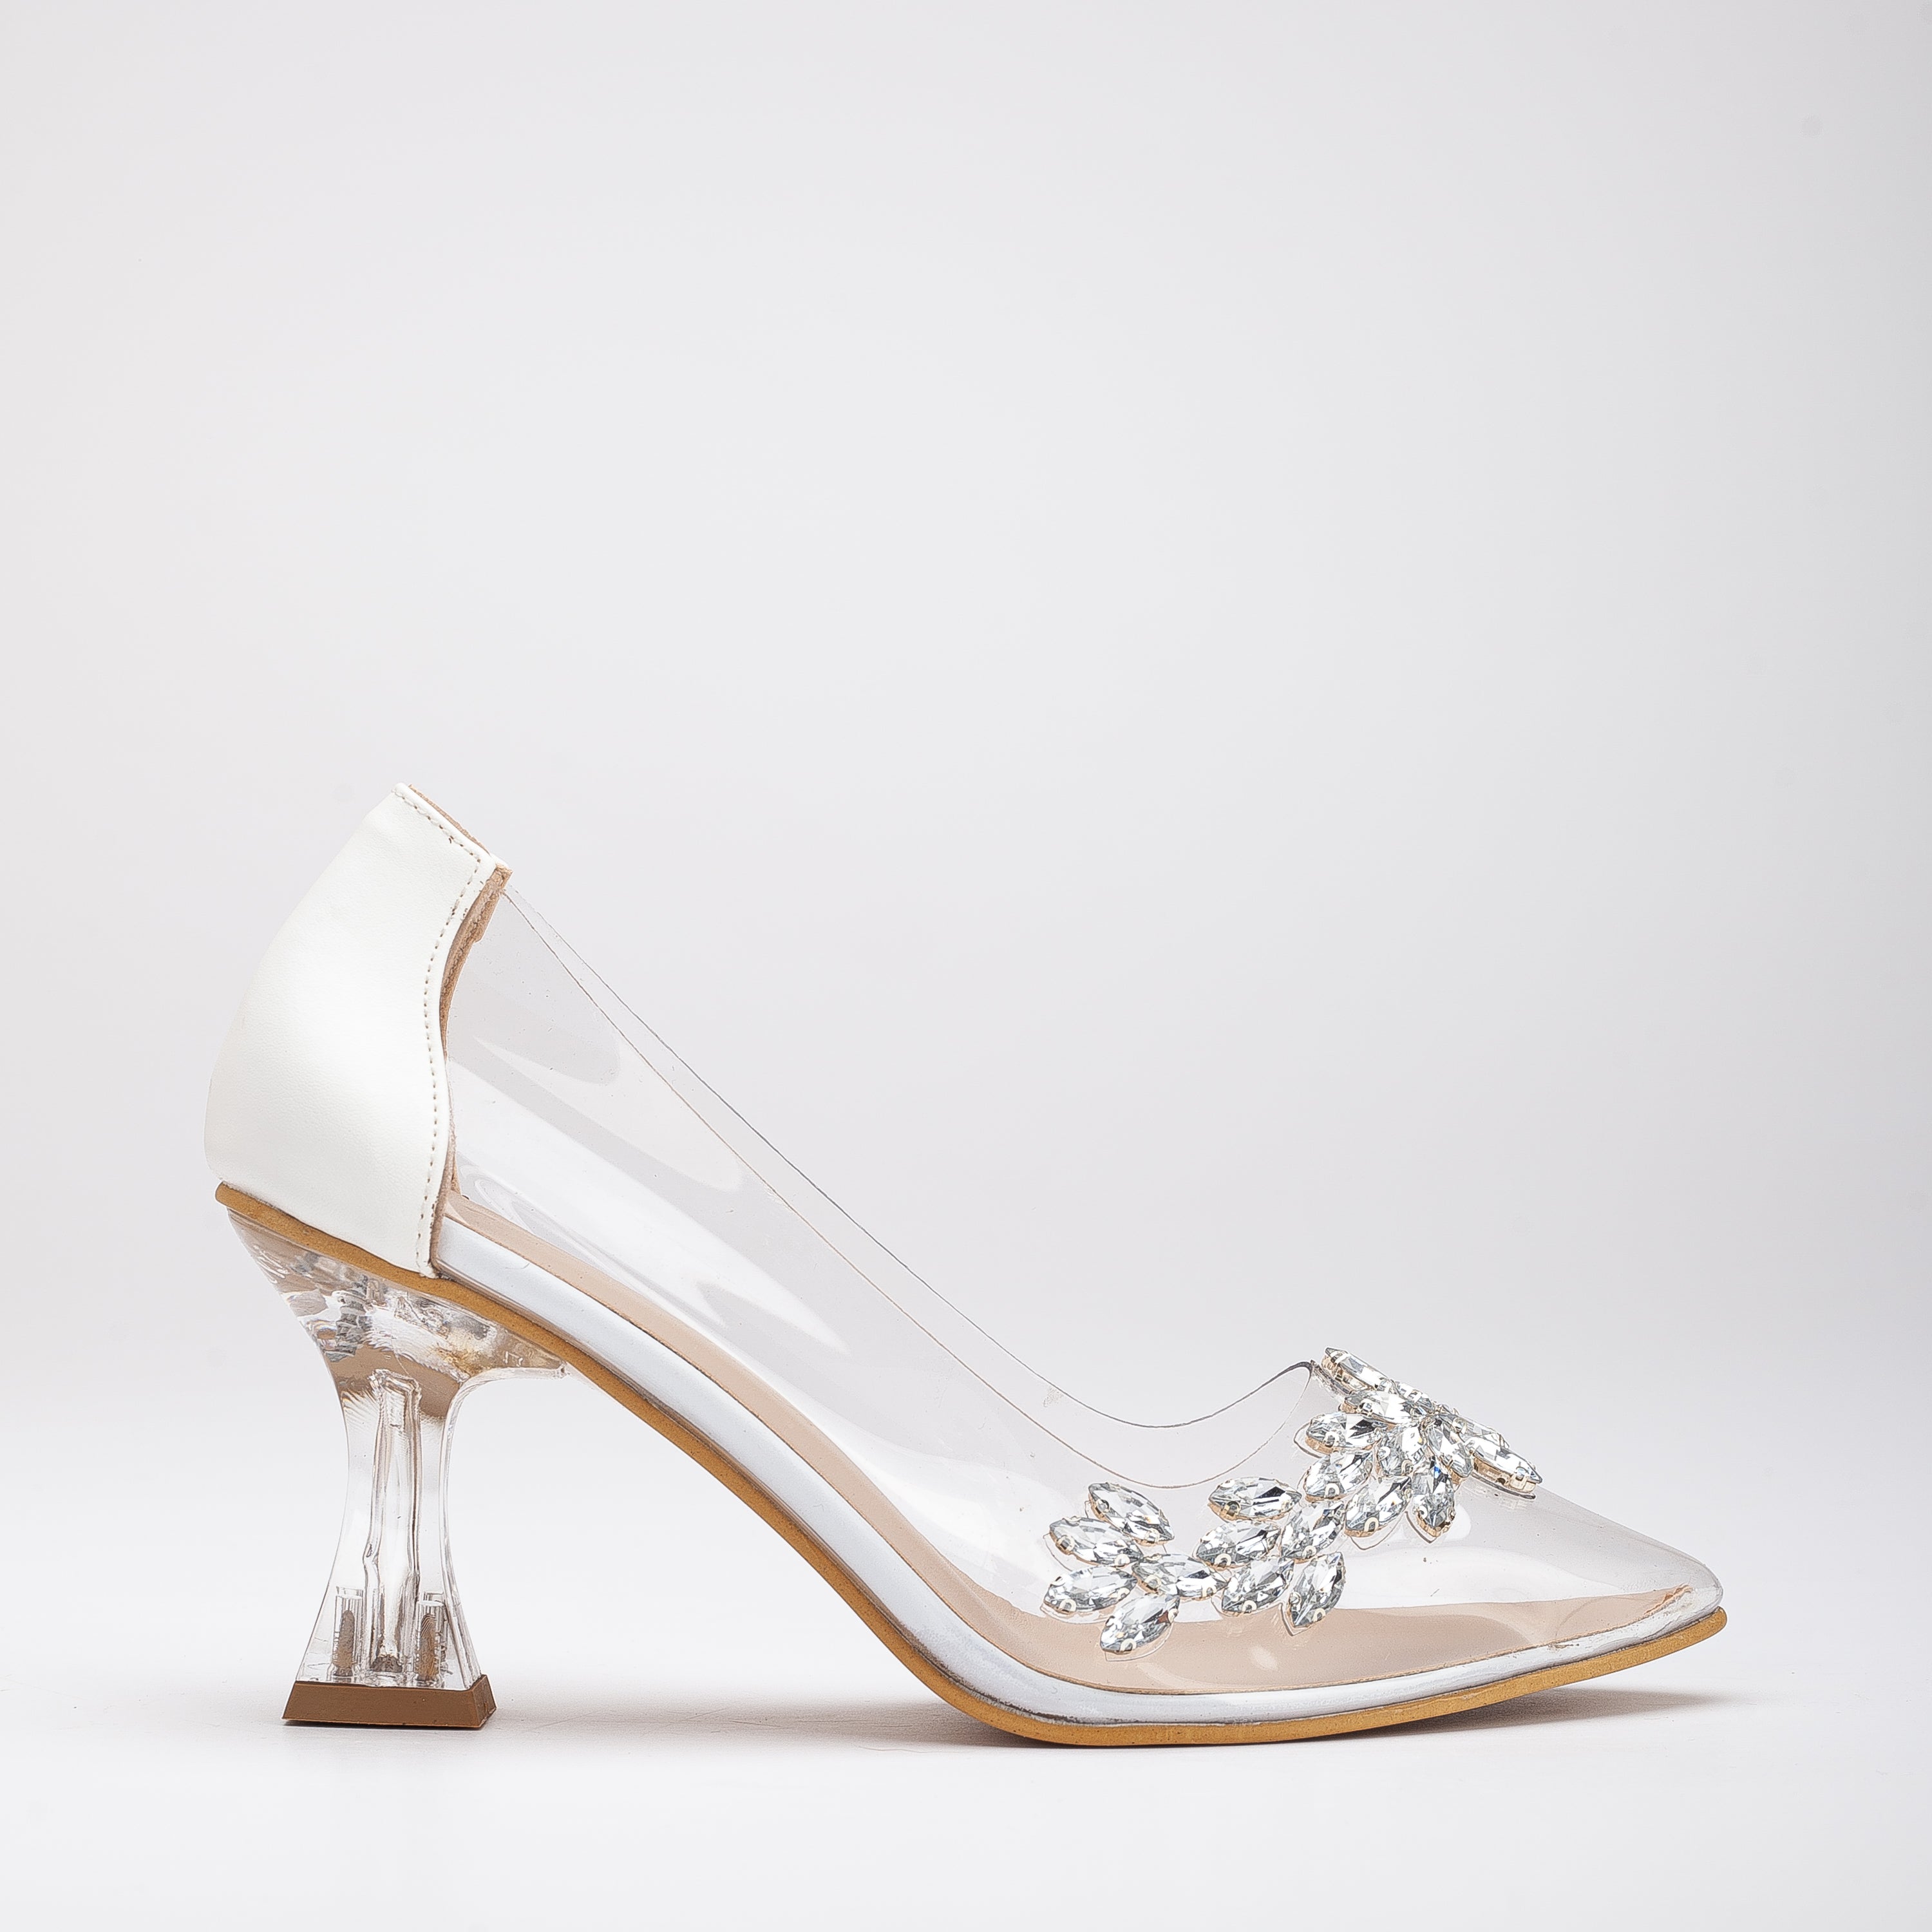 Princess Wedding Shoes, Transparent Wedding Shoes, Transparent Bride Heels, Shoes for Bride, Transparent Shoes, Bridal Heels, Wedding Heels